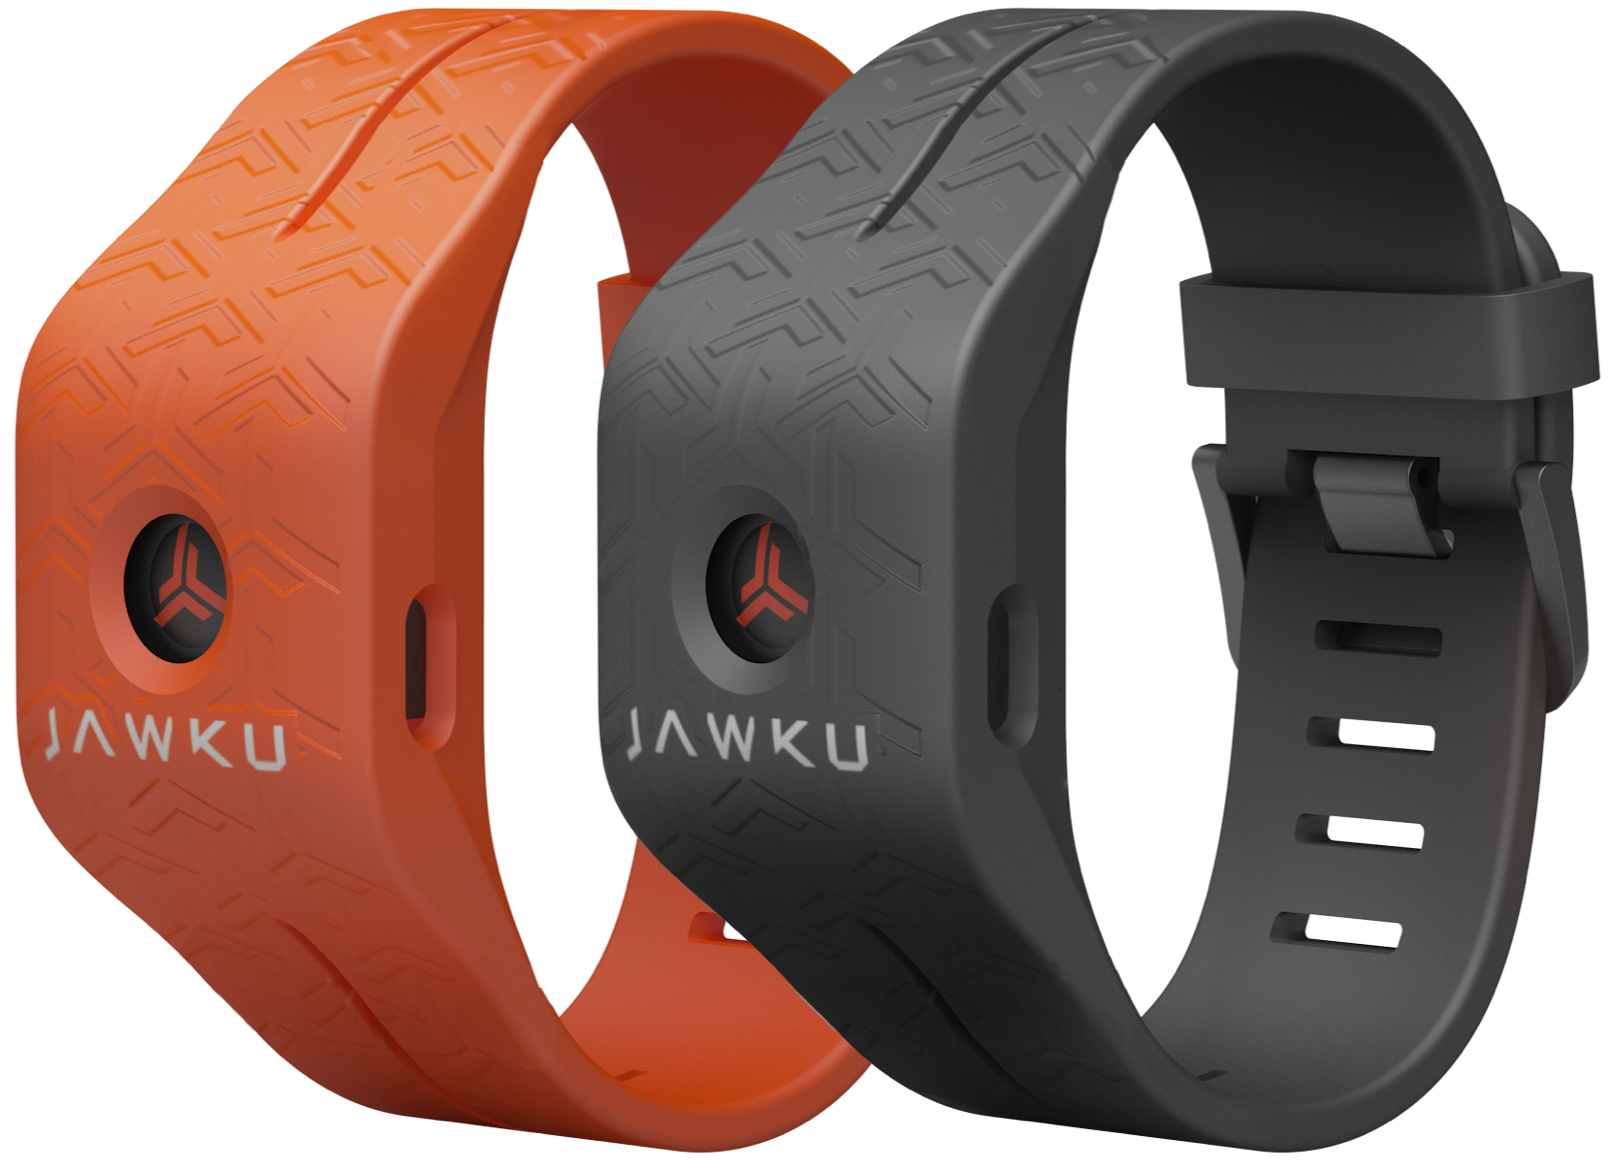 Jawku Wristband in black and orange